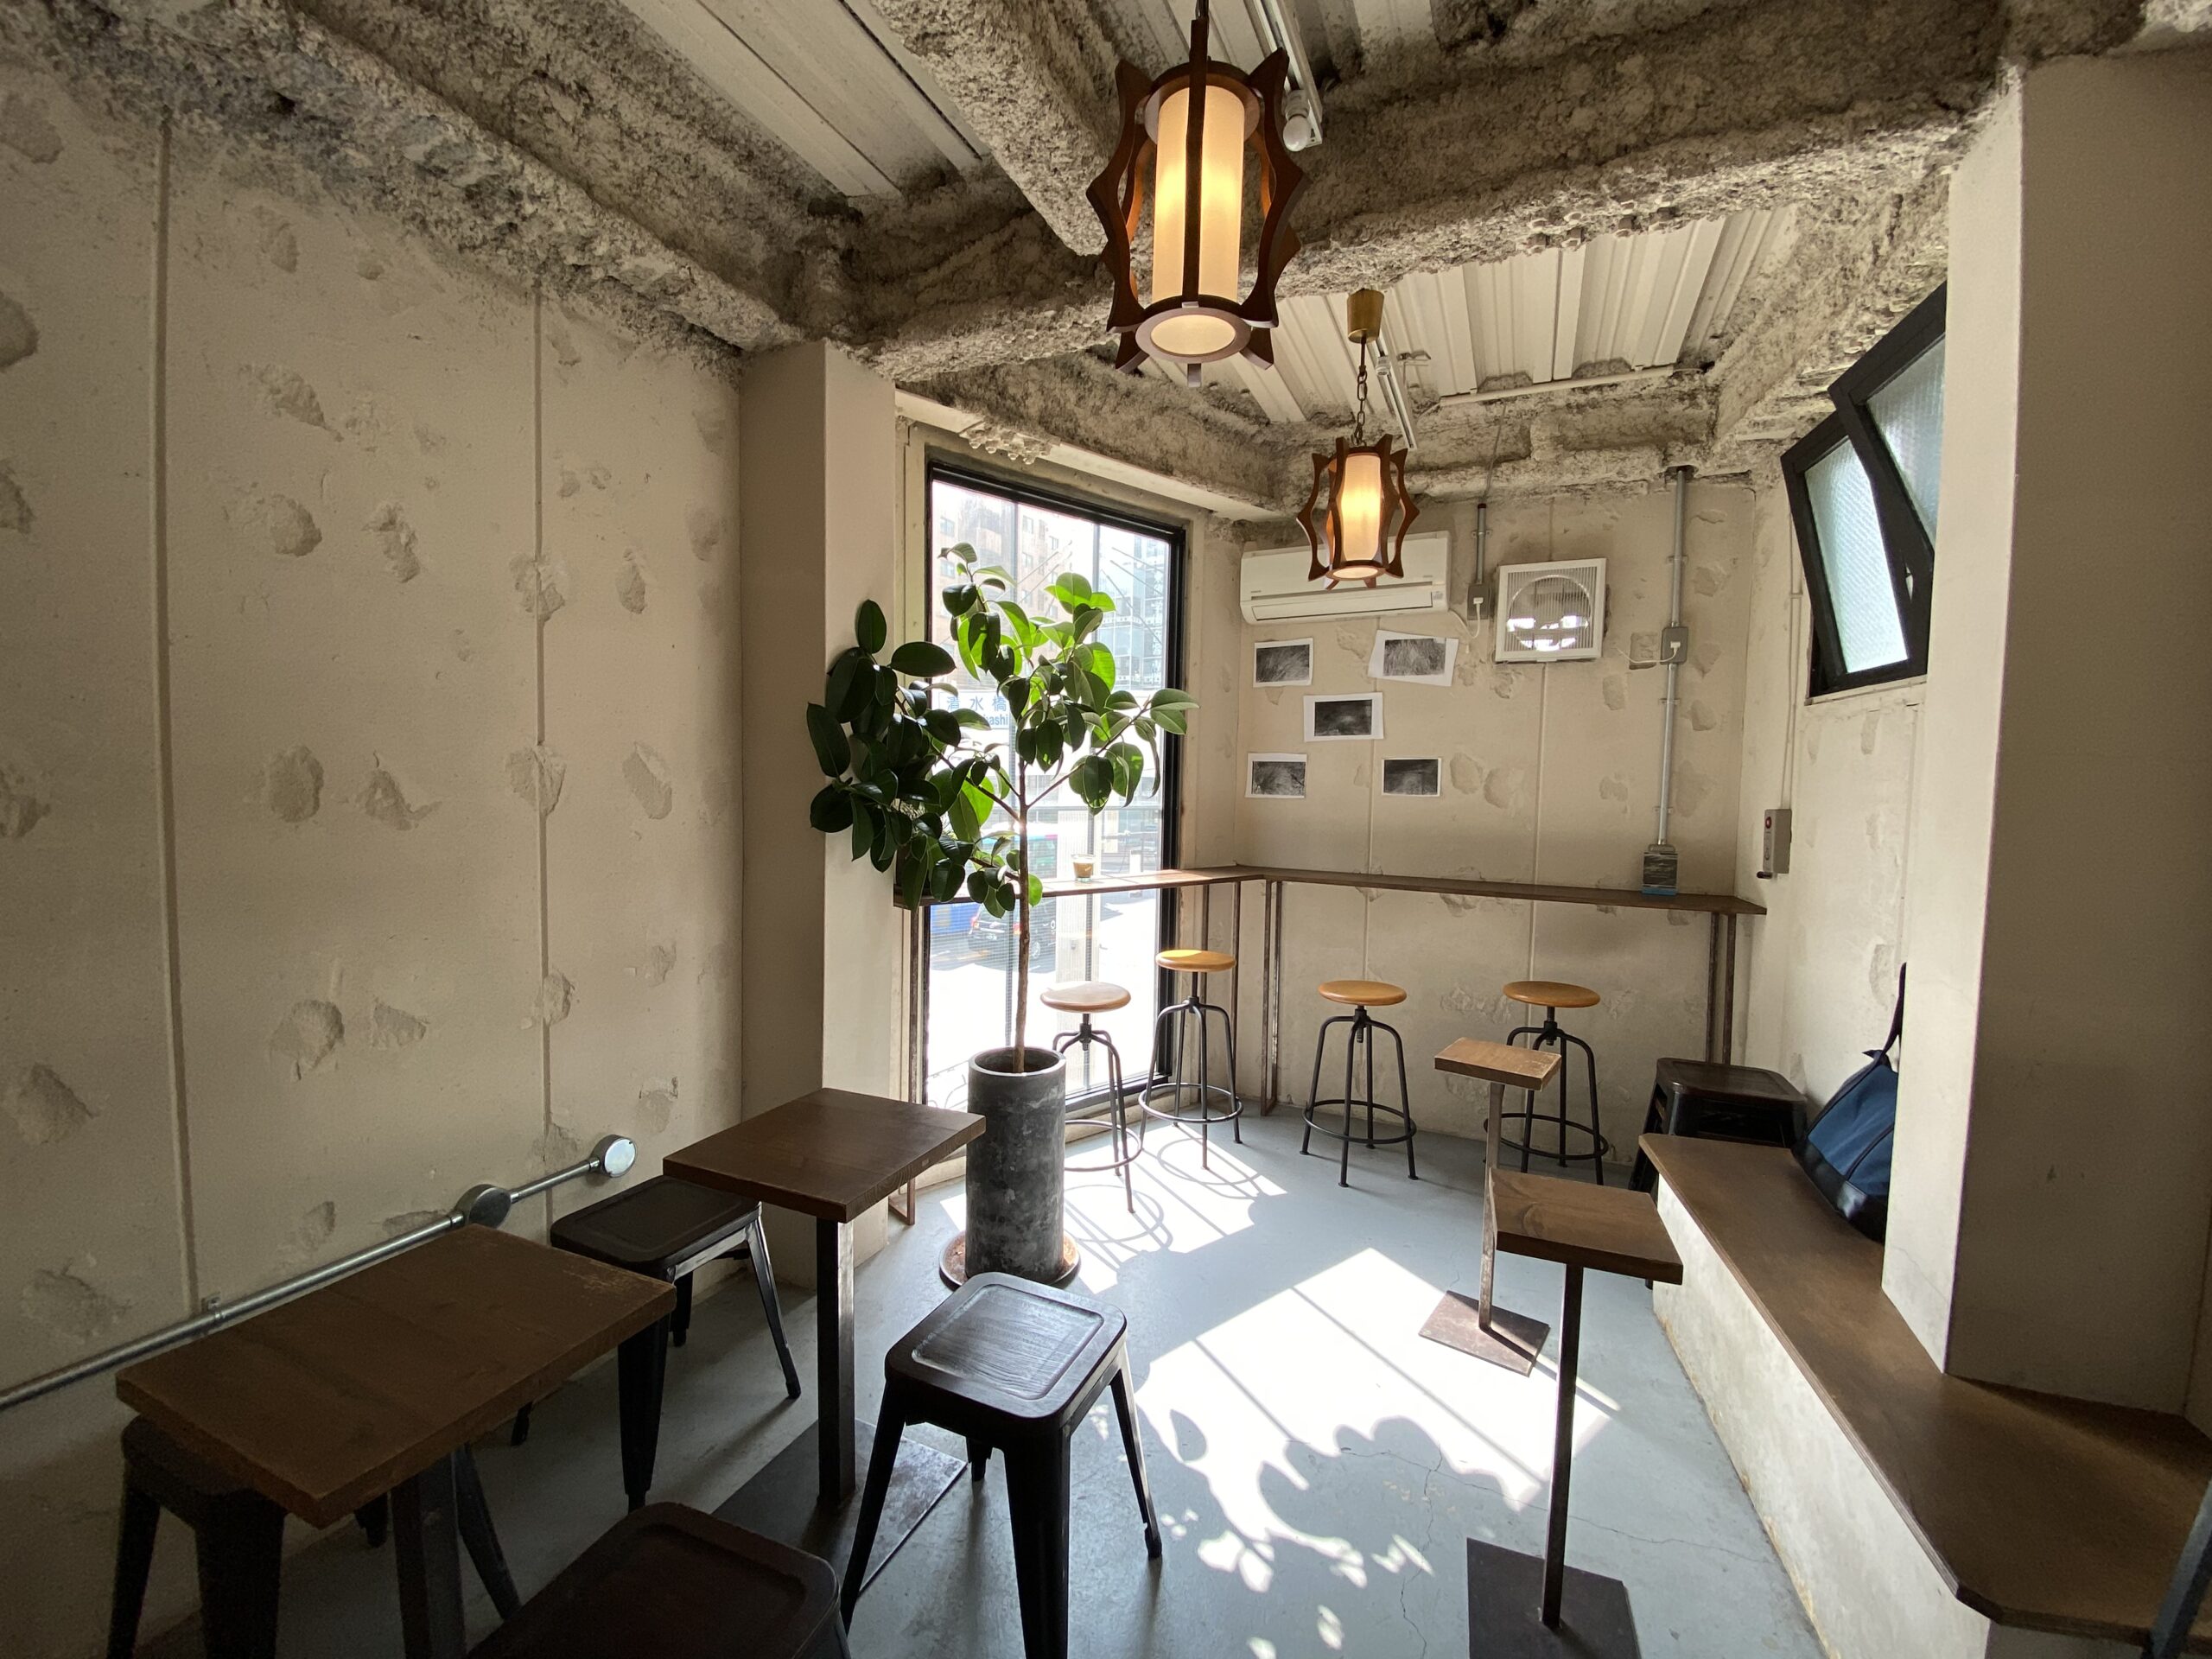 ブルートラベルエンジニア パソコン作業（プログラミング学習環境）におすすめのカフェ|新宿・高田馬場 COUNTERPART COFFEE GALLERY（カウンターパート・コーヒーギャラリー）